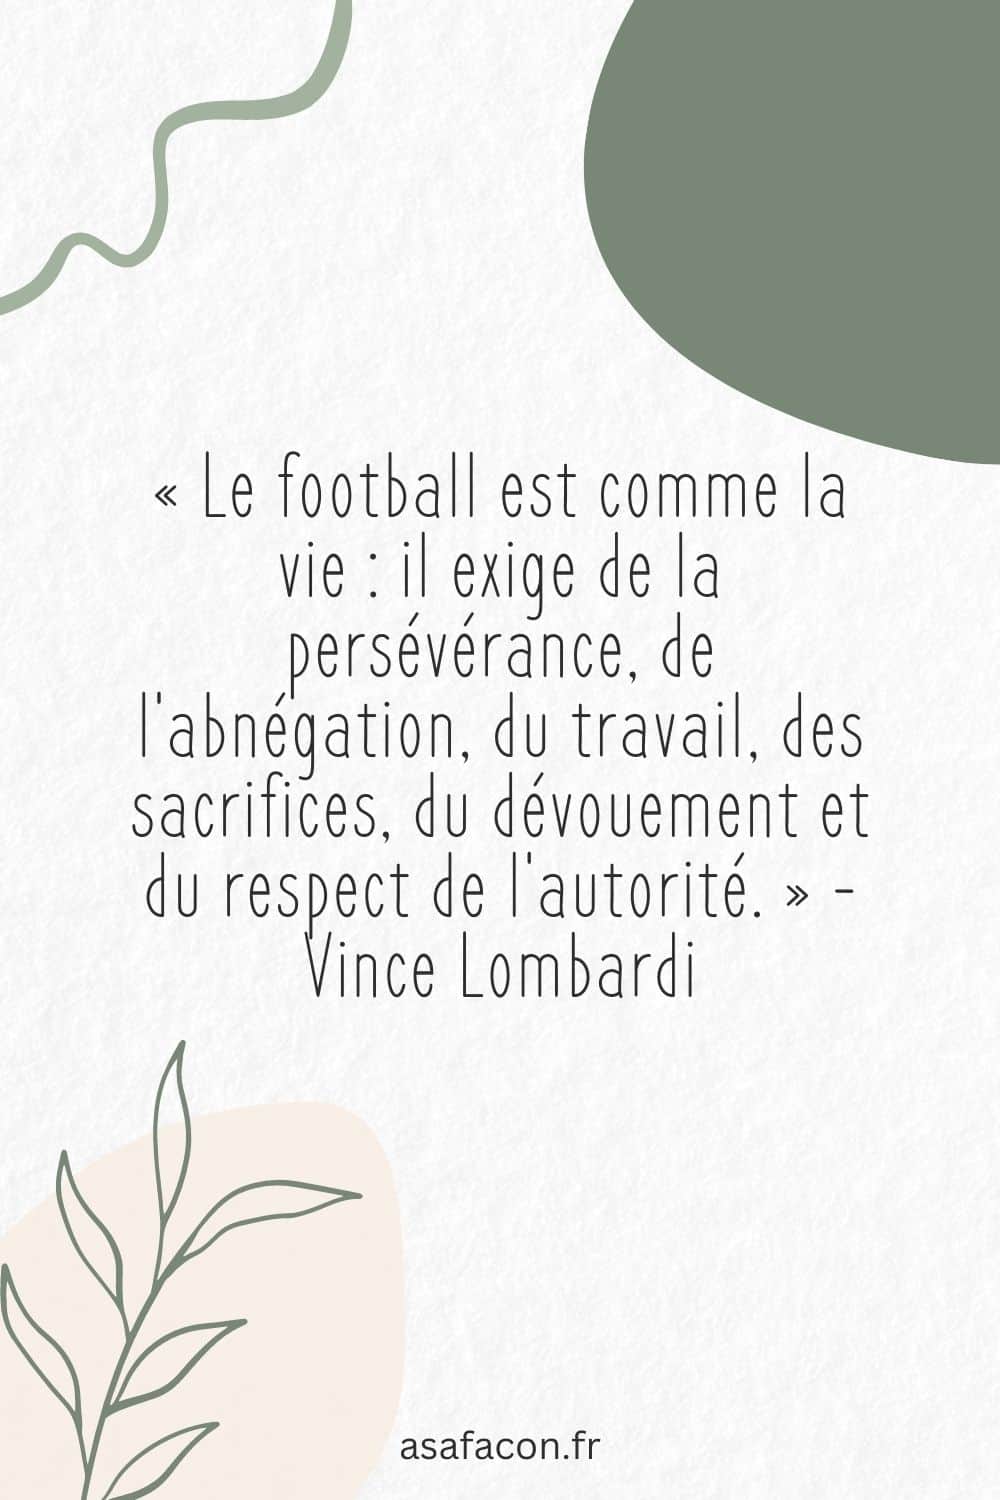 « Le football est comme la vie il exige de la persévérance, de l'abnégation, du travail, des sacrifices, du dévouement et du respect de l'autorité. » - Vince Lombardi